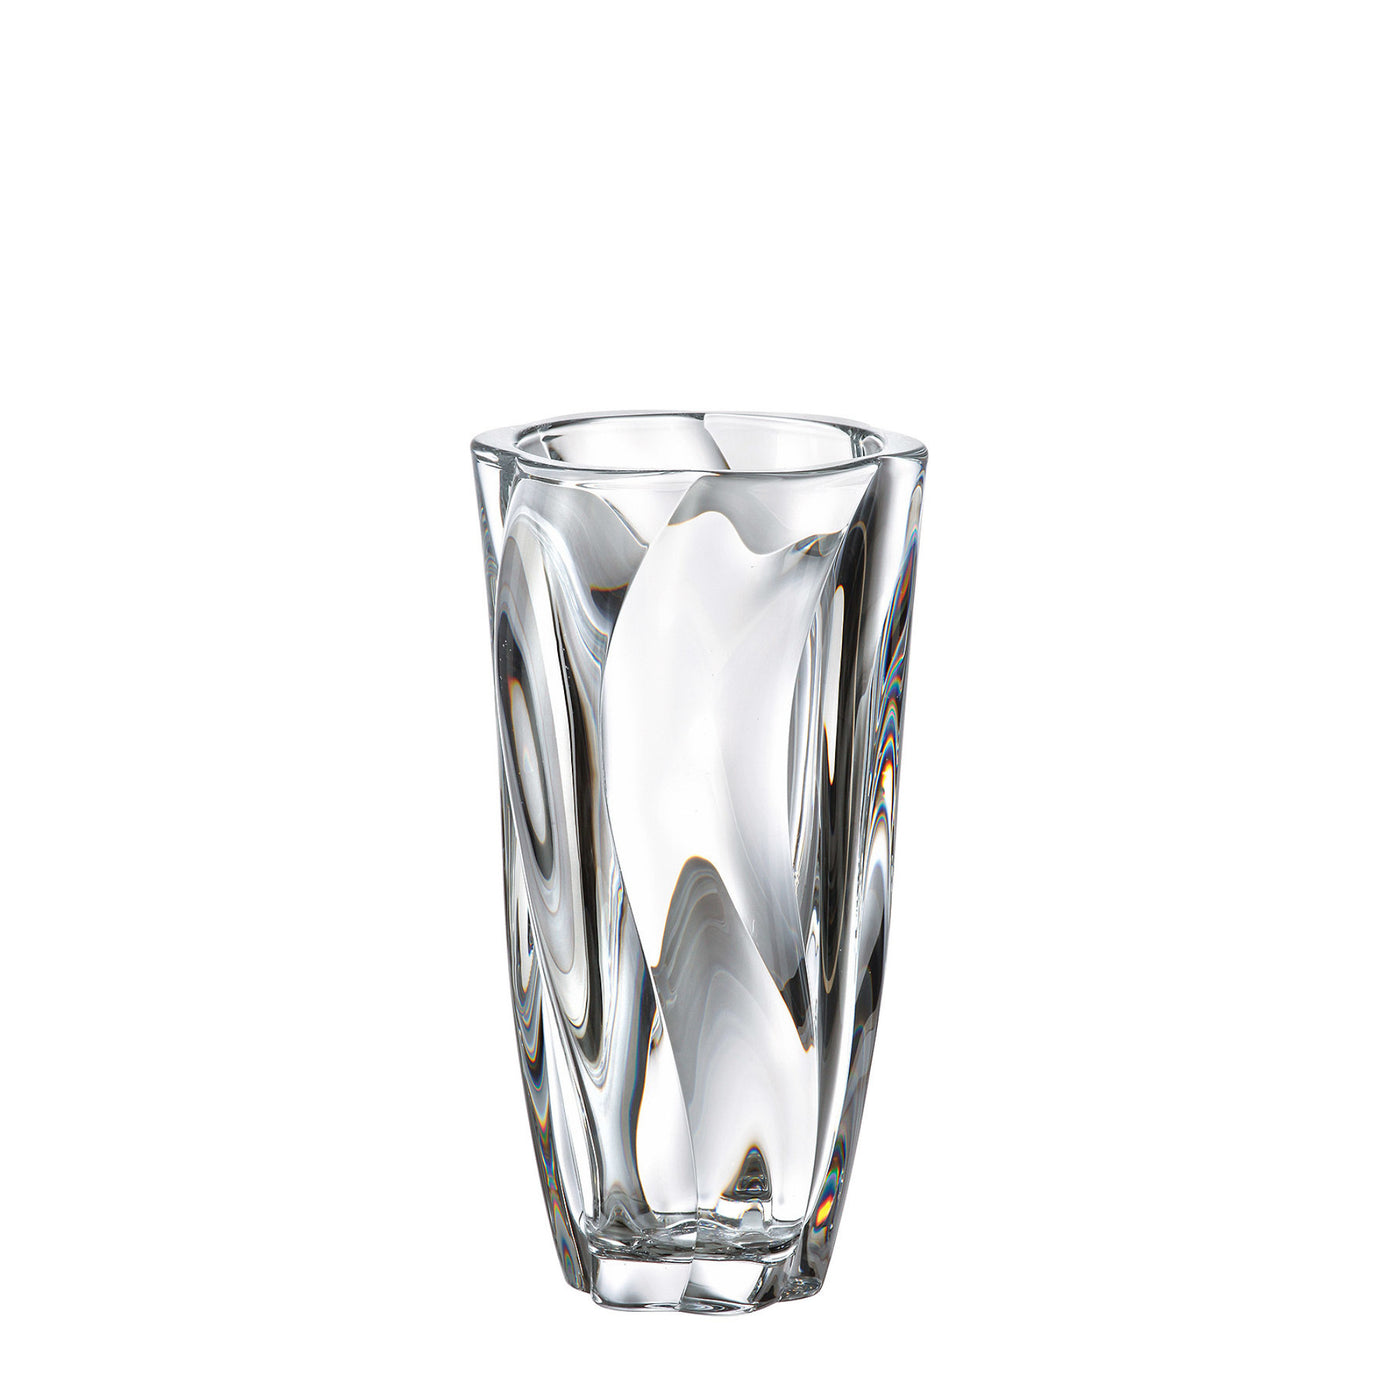 Vysoká skleněná váza Crystal Bohemia Barley Twist 25,5 cm